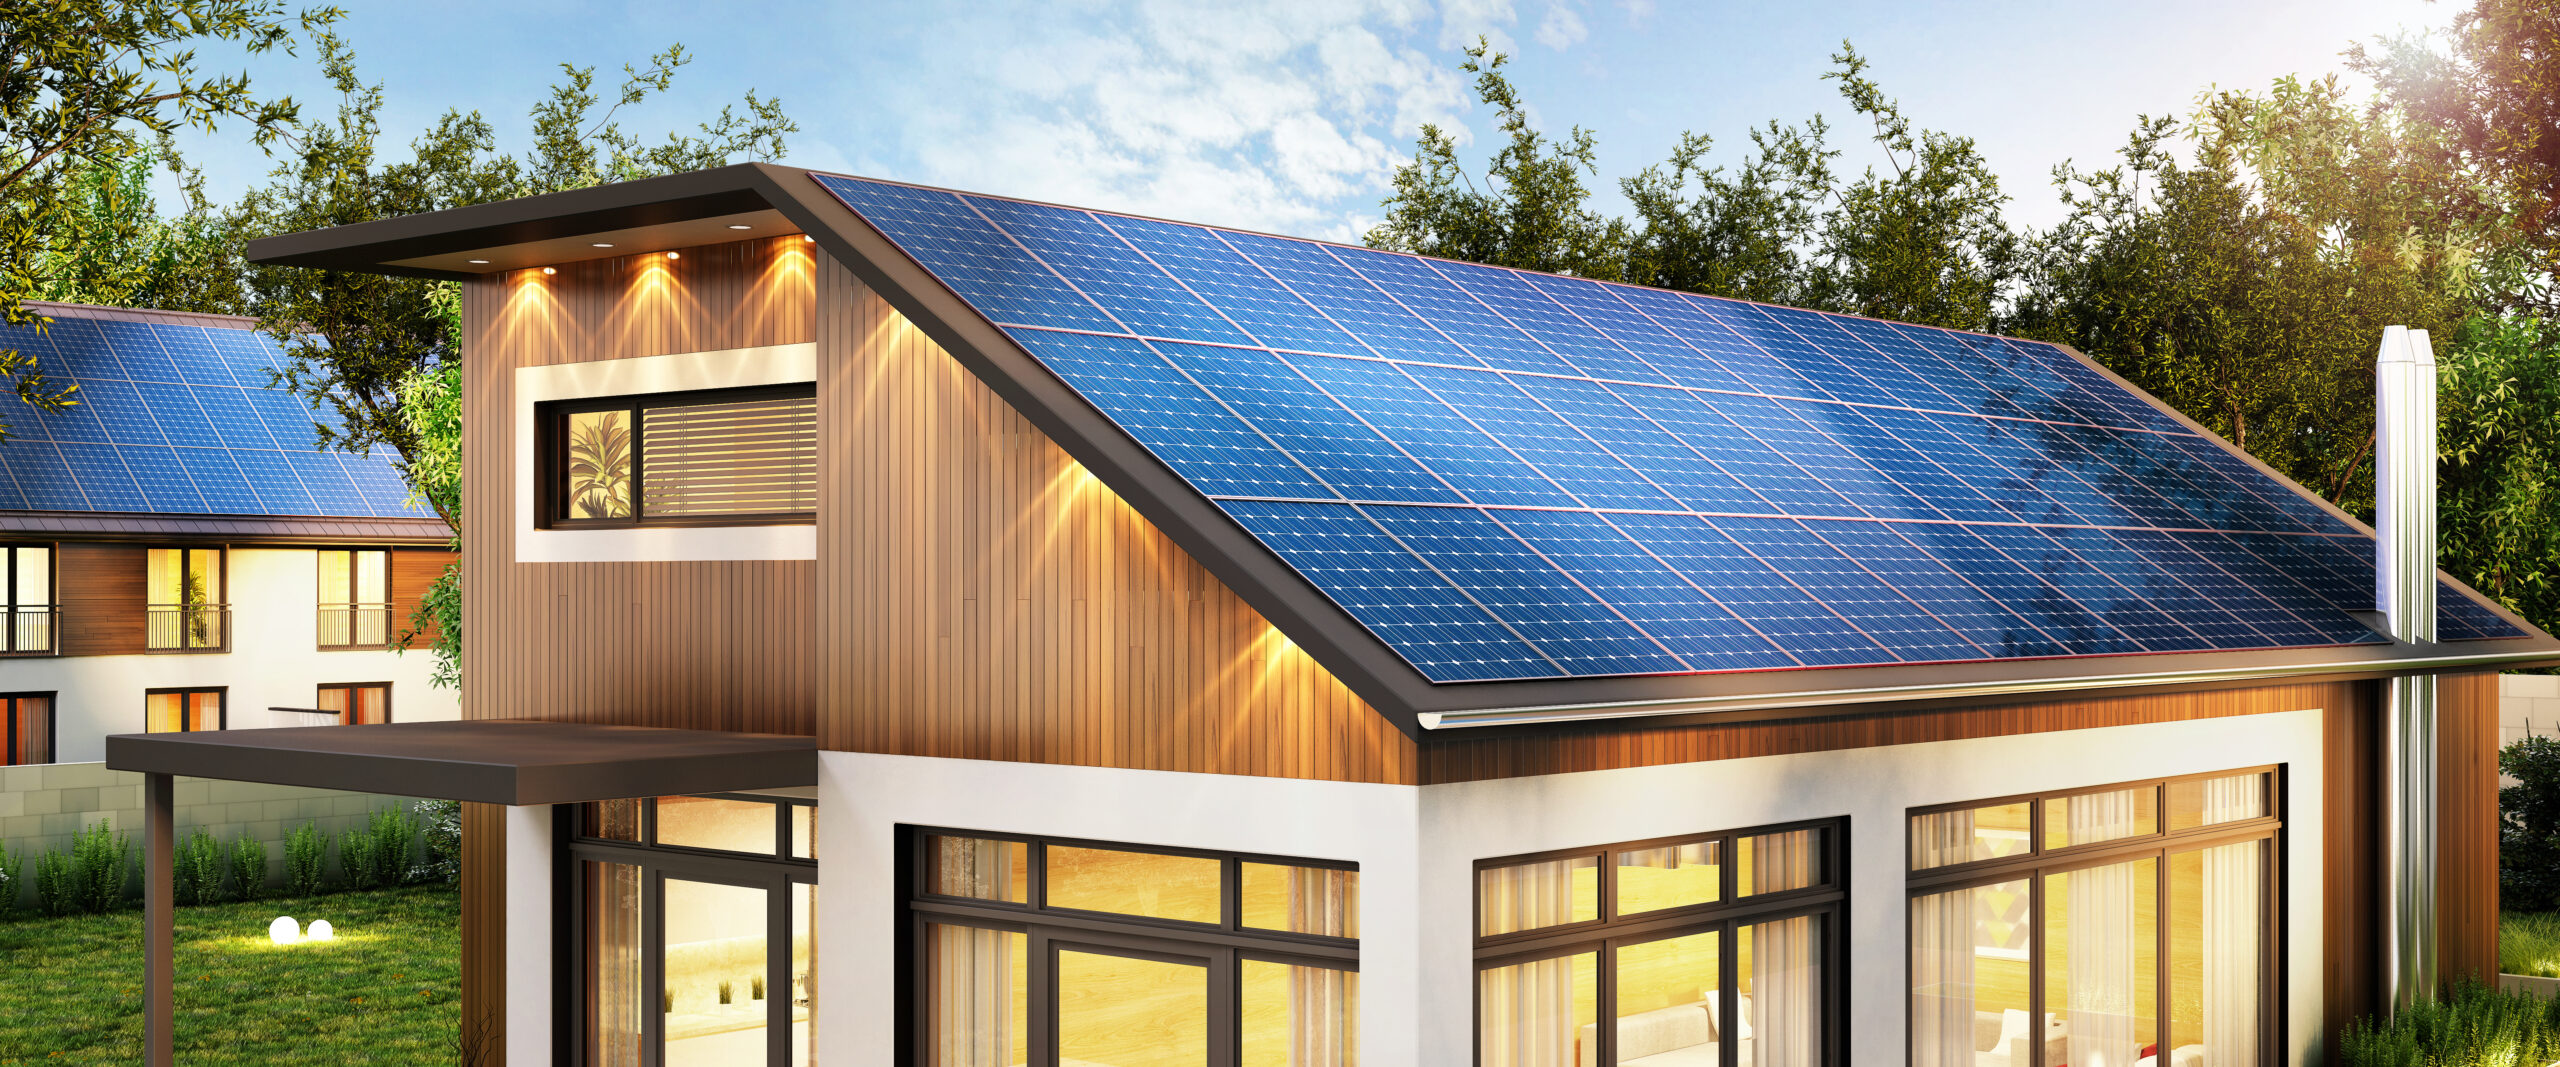 Los edificios sustentables: las alternativas de la energía solar fotovoltaica